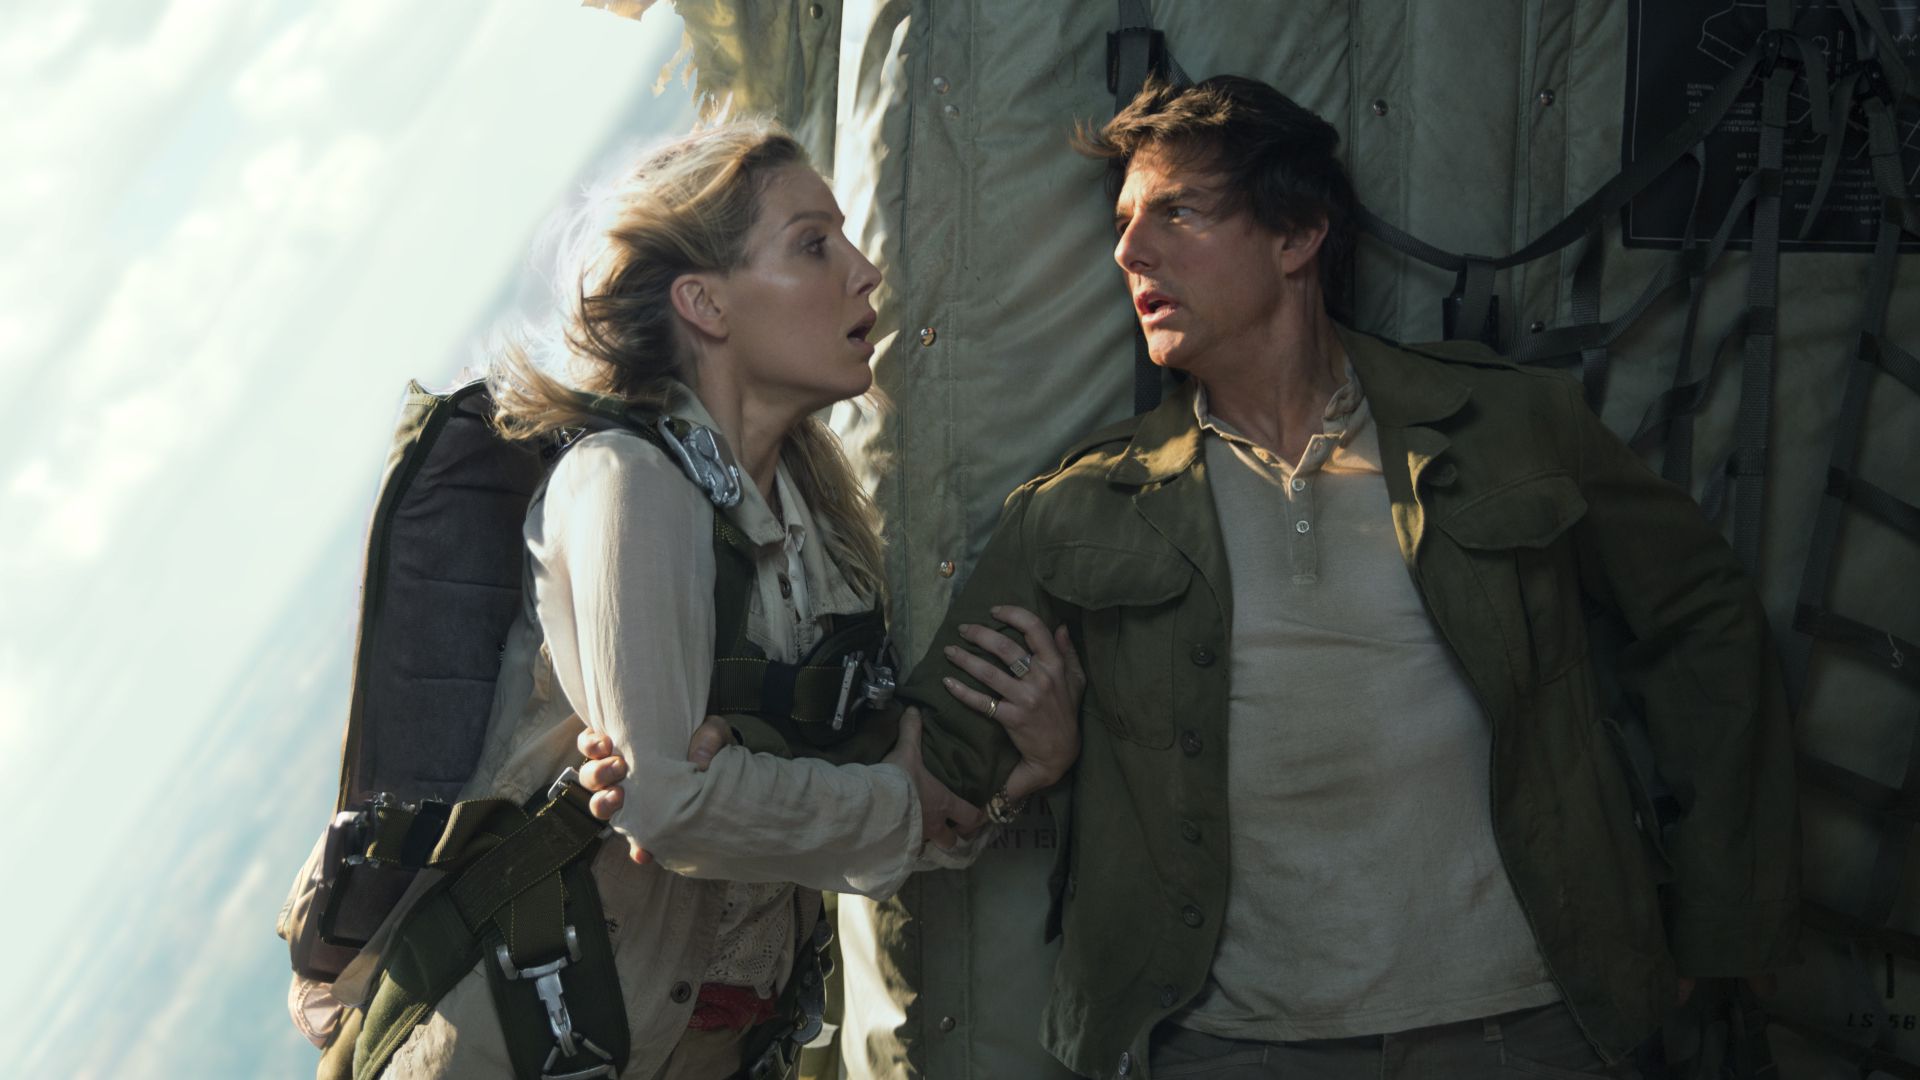 تام کروز در حال تلاش برای نجات شخصیت دیگر از هواپیما در حال سقوط در فیلم The Mummy